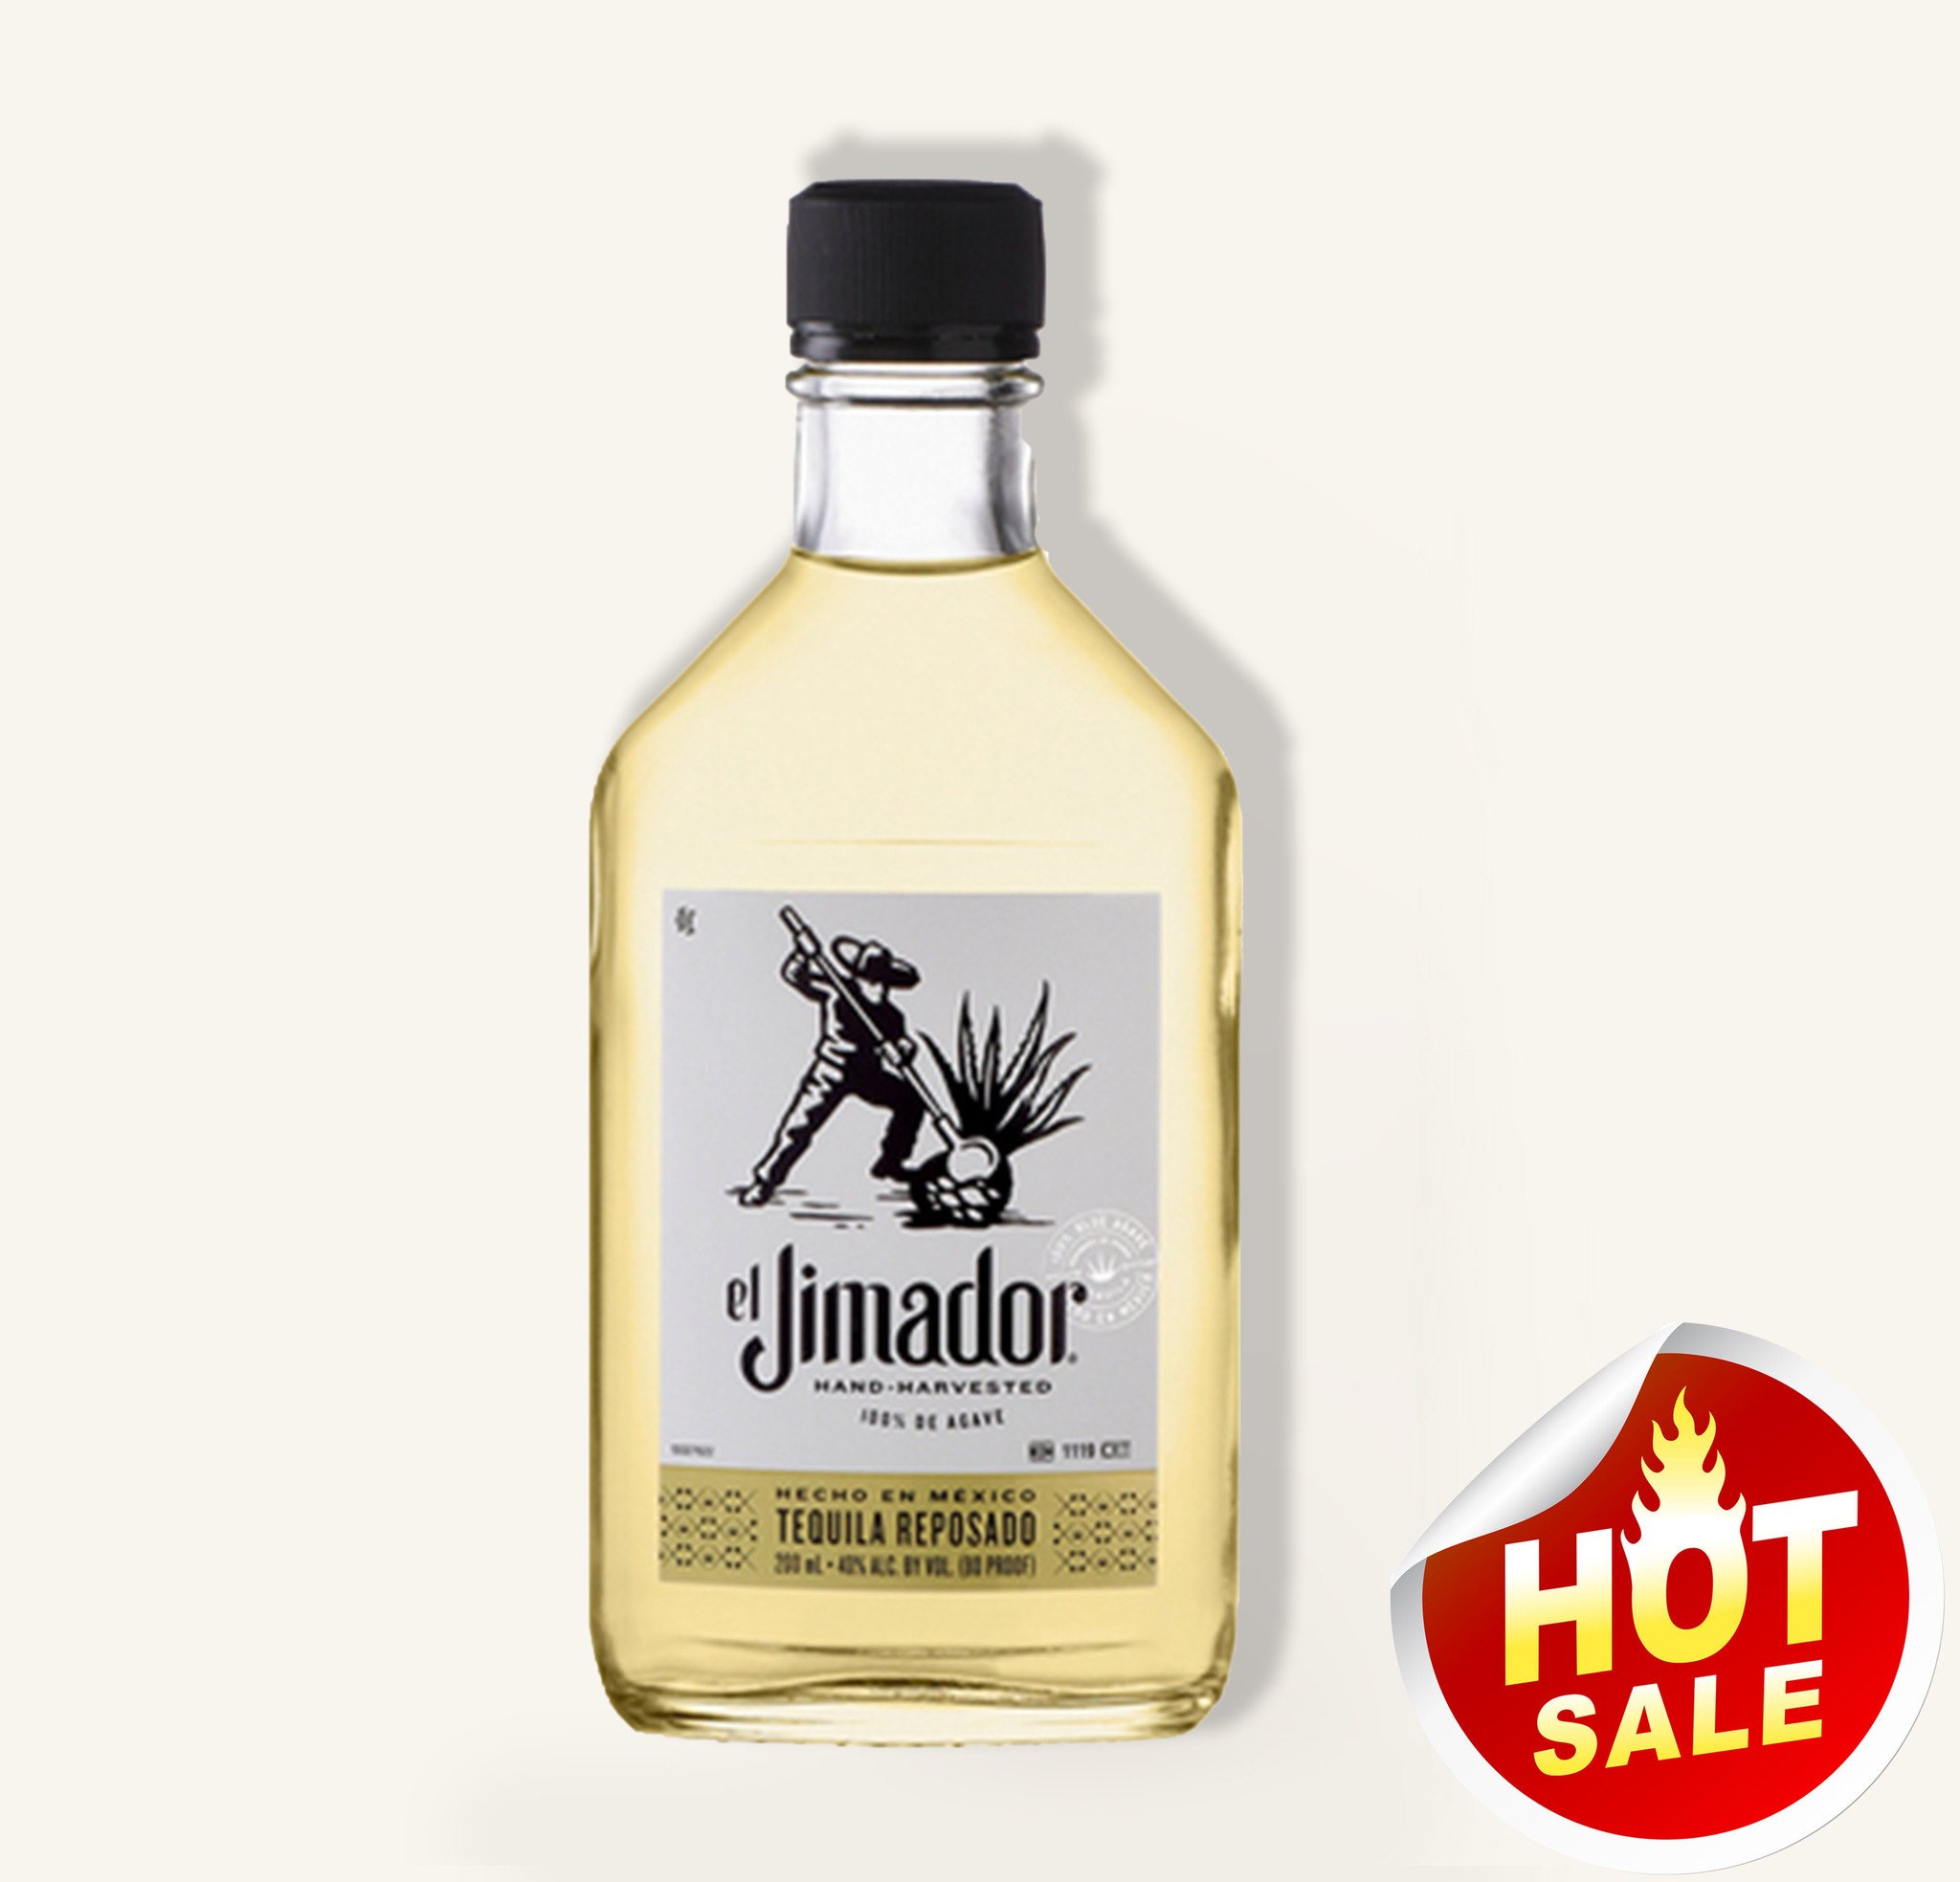 El Jimador Reposado Tequila 200ml $8 FREE DELIVERY